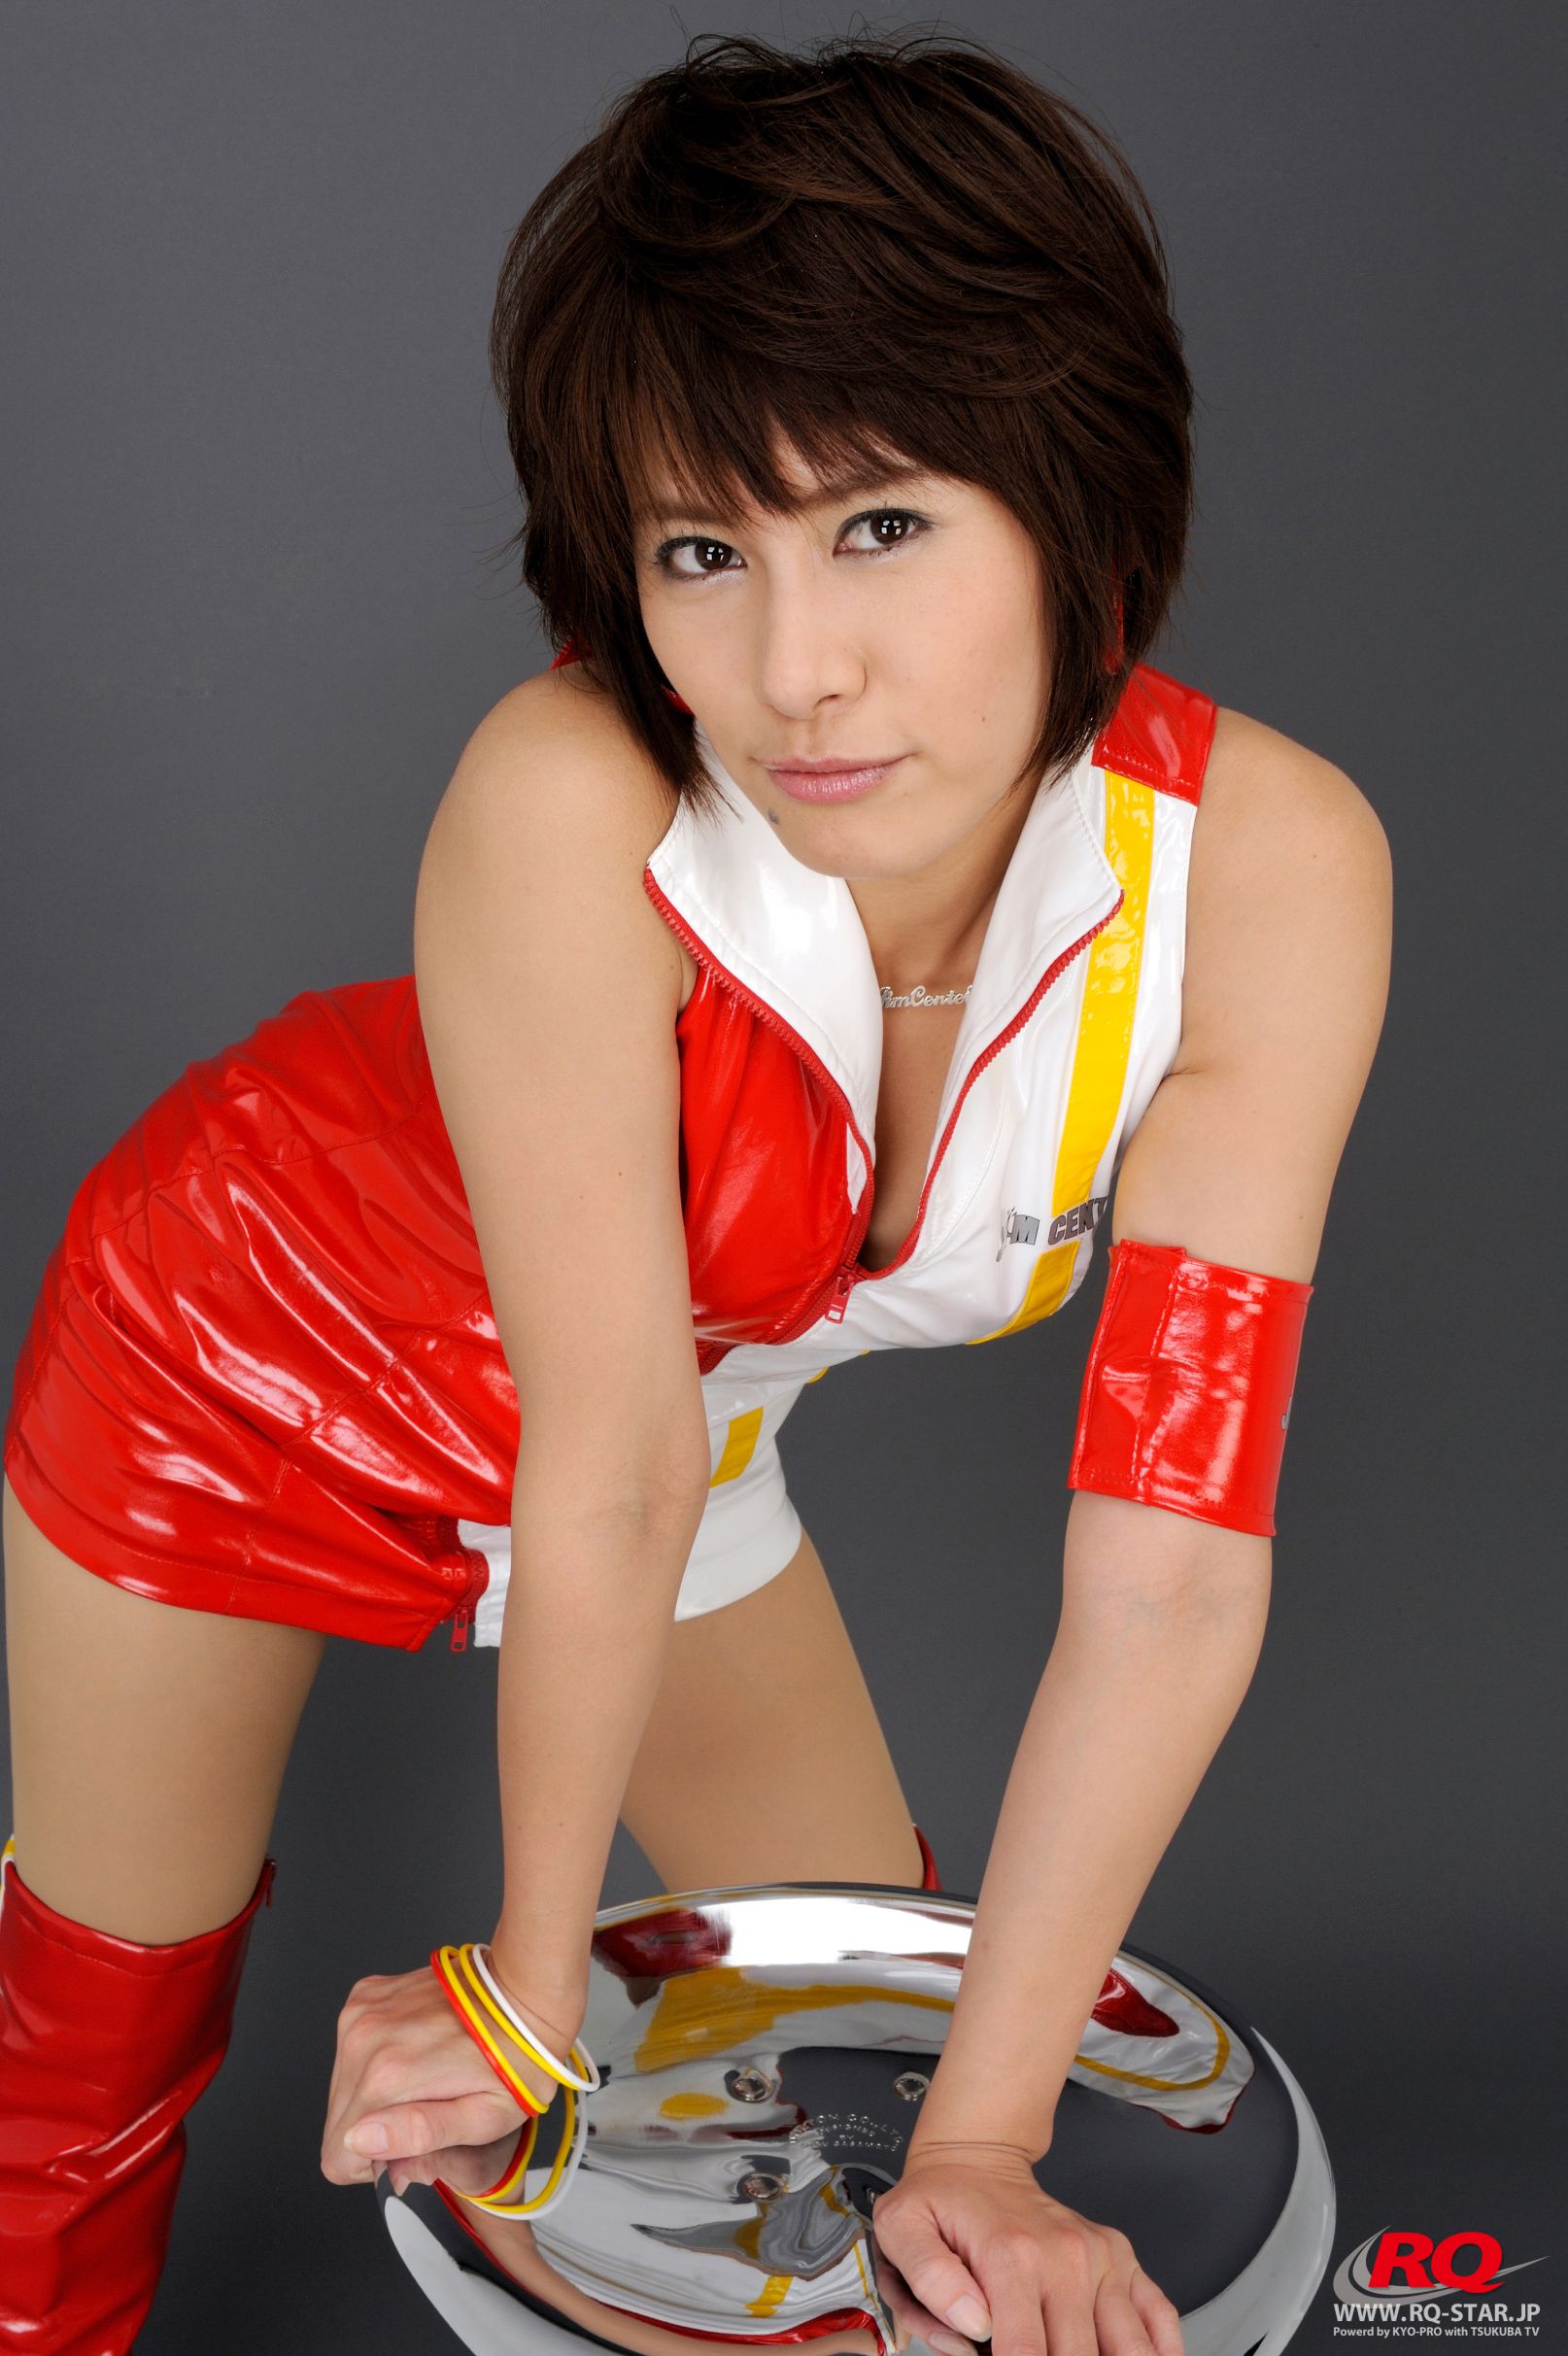 [RQ-star] No.00088 Akiko Fujihara Fujiwen Mingzi Race Queen – 2008 Jim Gainer Photo Collection